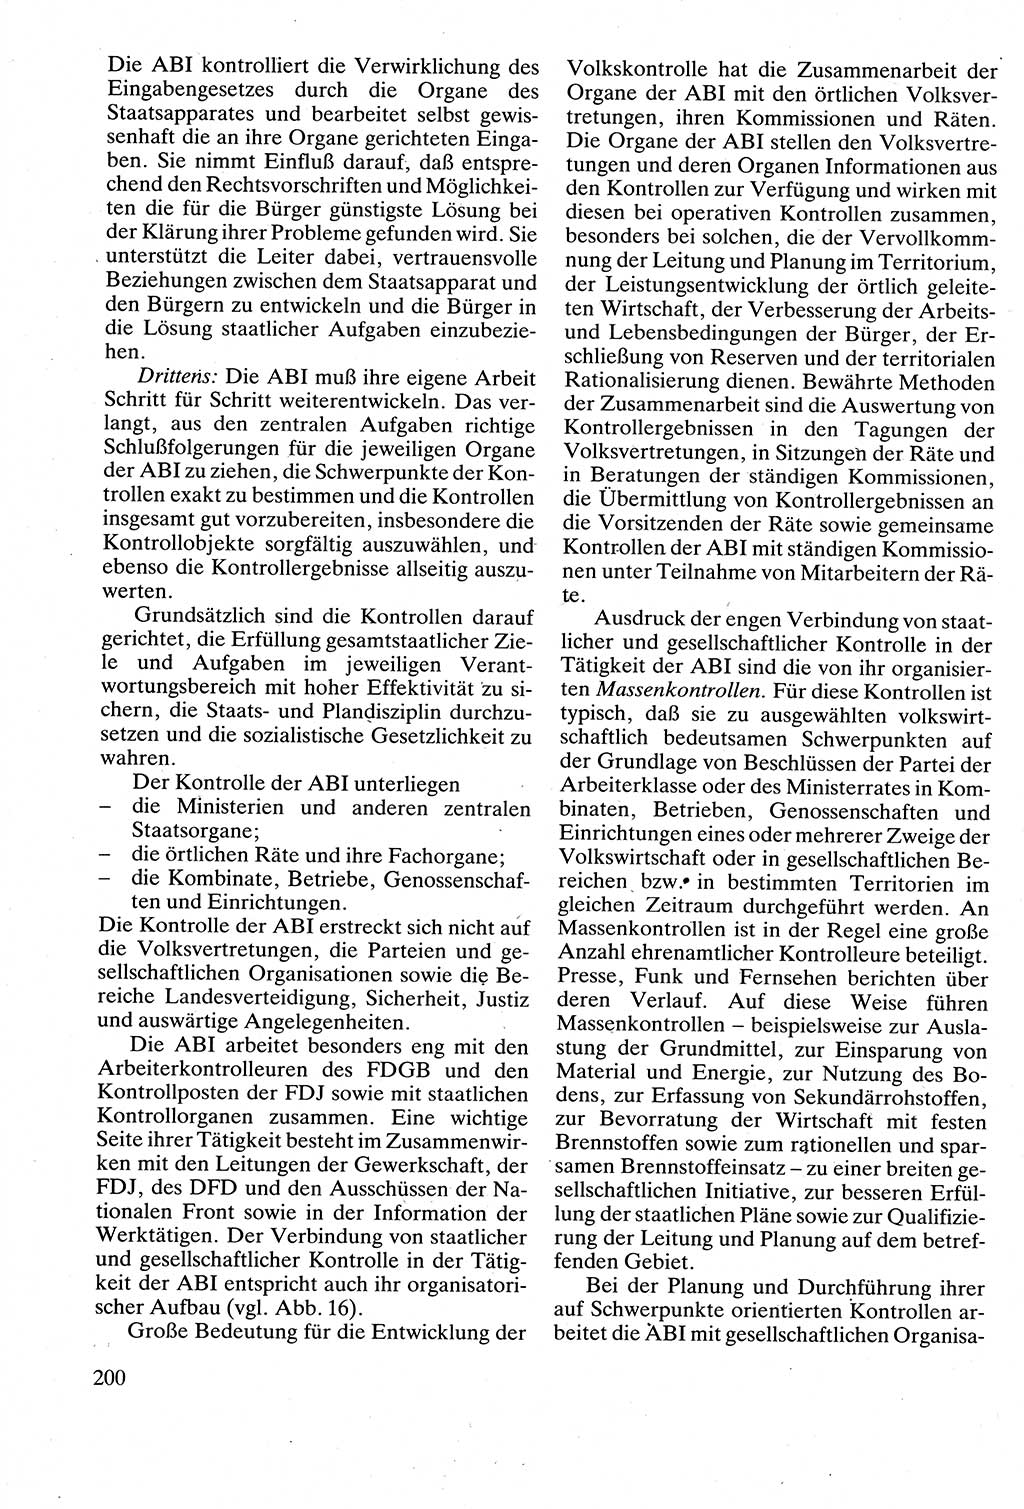 Verwaltungsrecht [Deutsche Demokratische Republik (DDR)], Lehrbuch 1988, Seite 200 (Verw.-R. DDR Lb. 1988, S. 200)